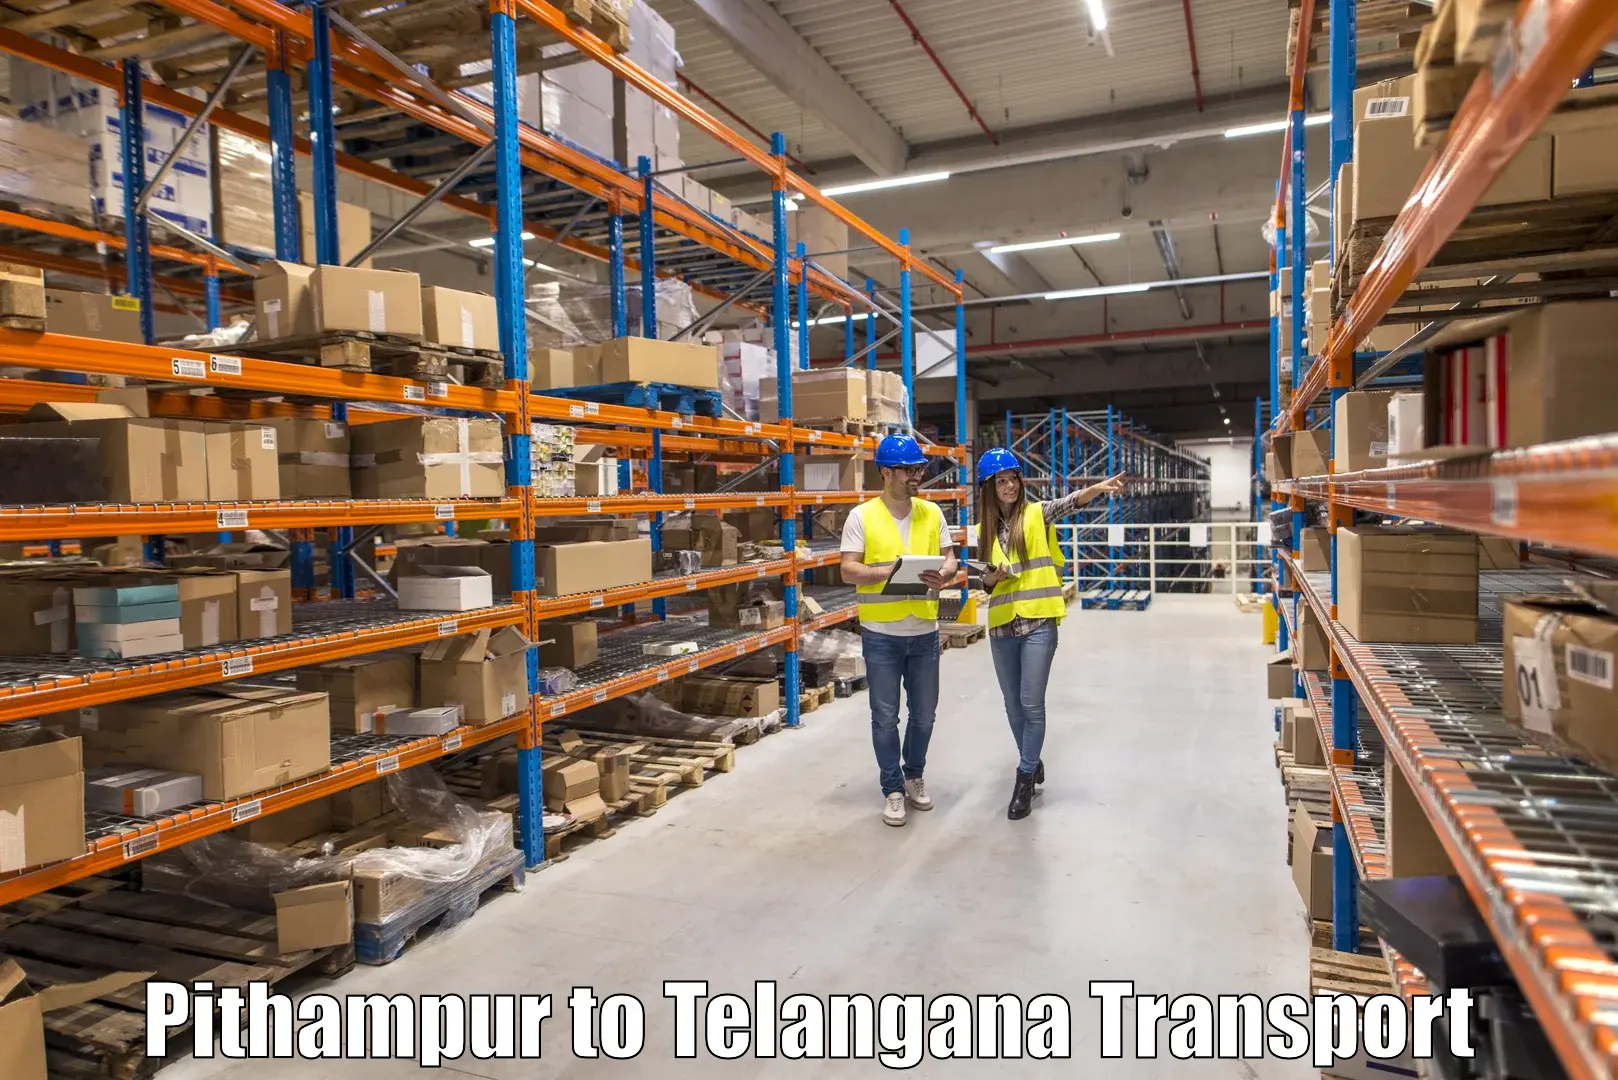 Shipping services Pithampur to Kacheguda